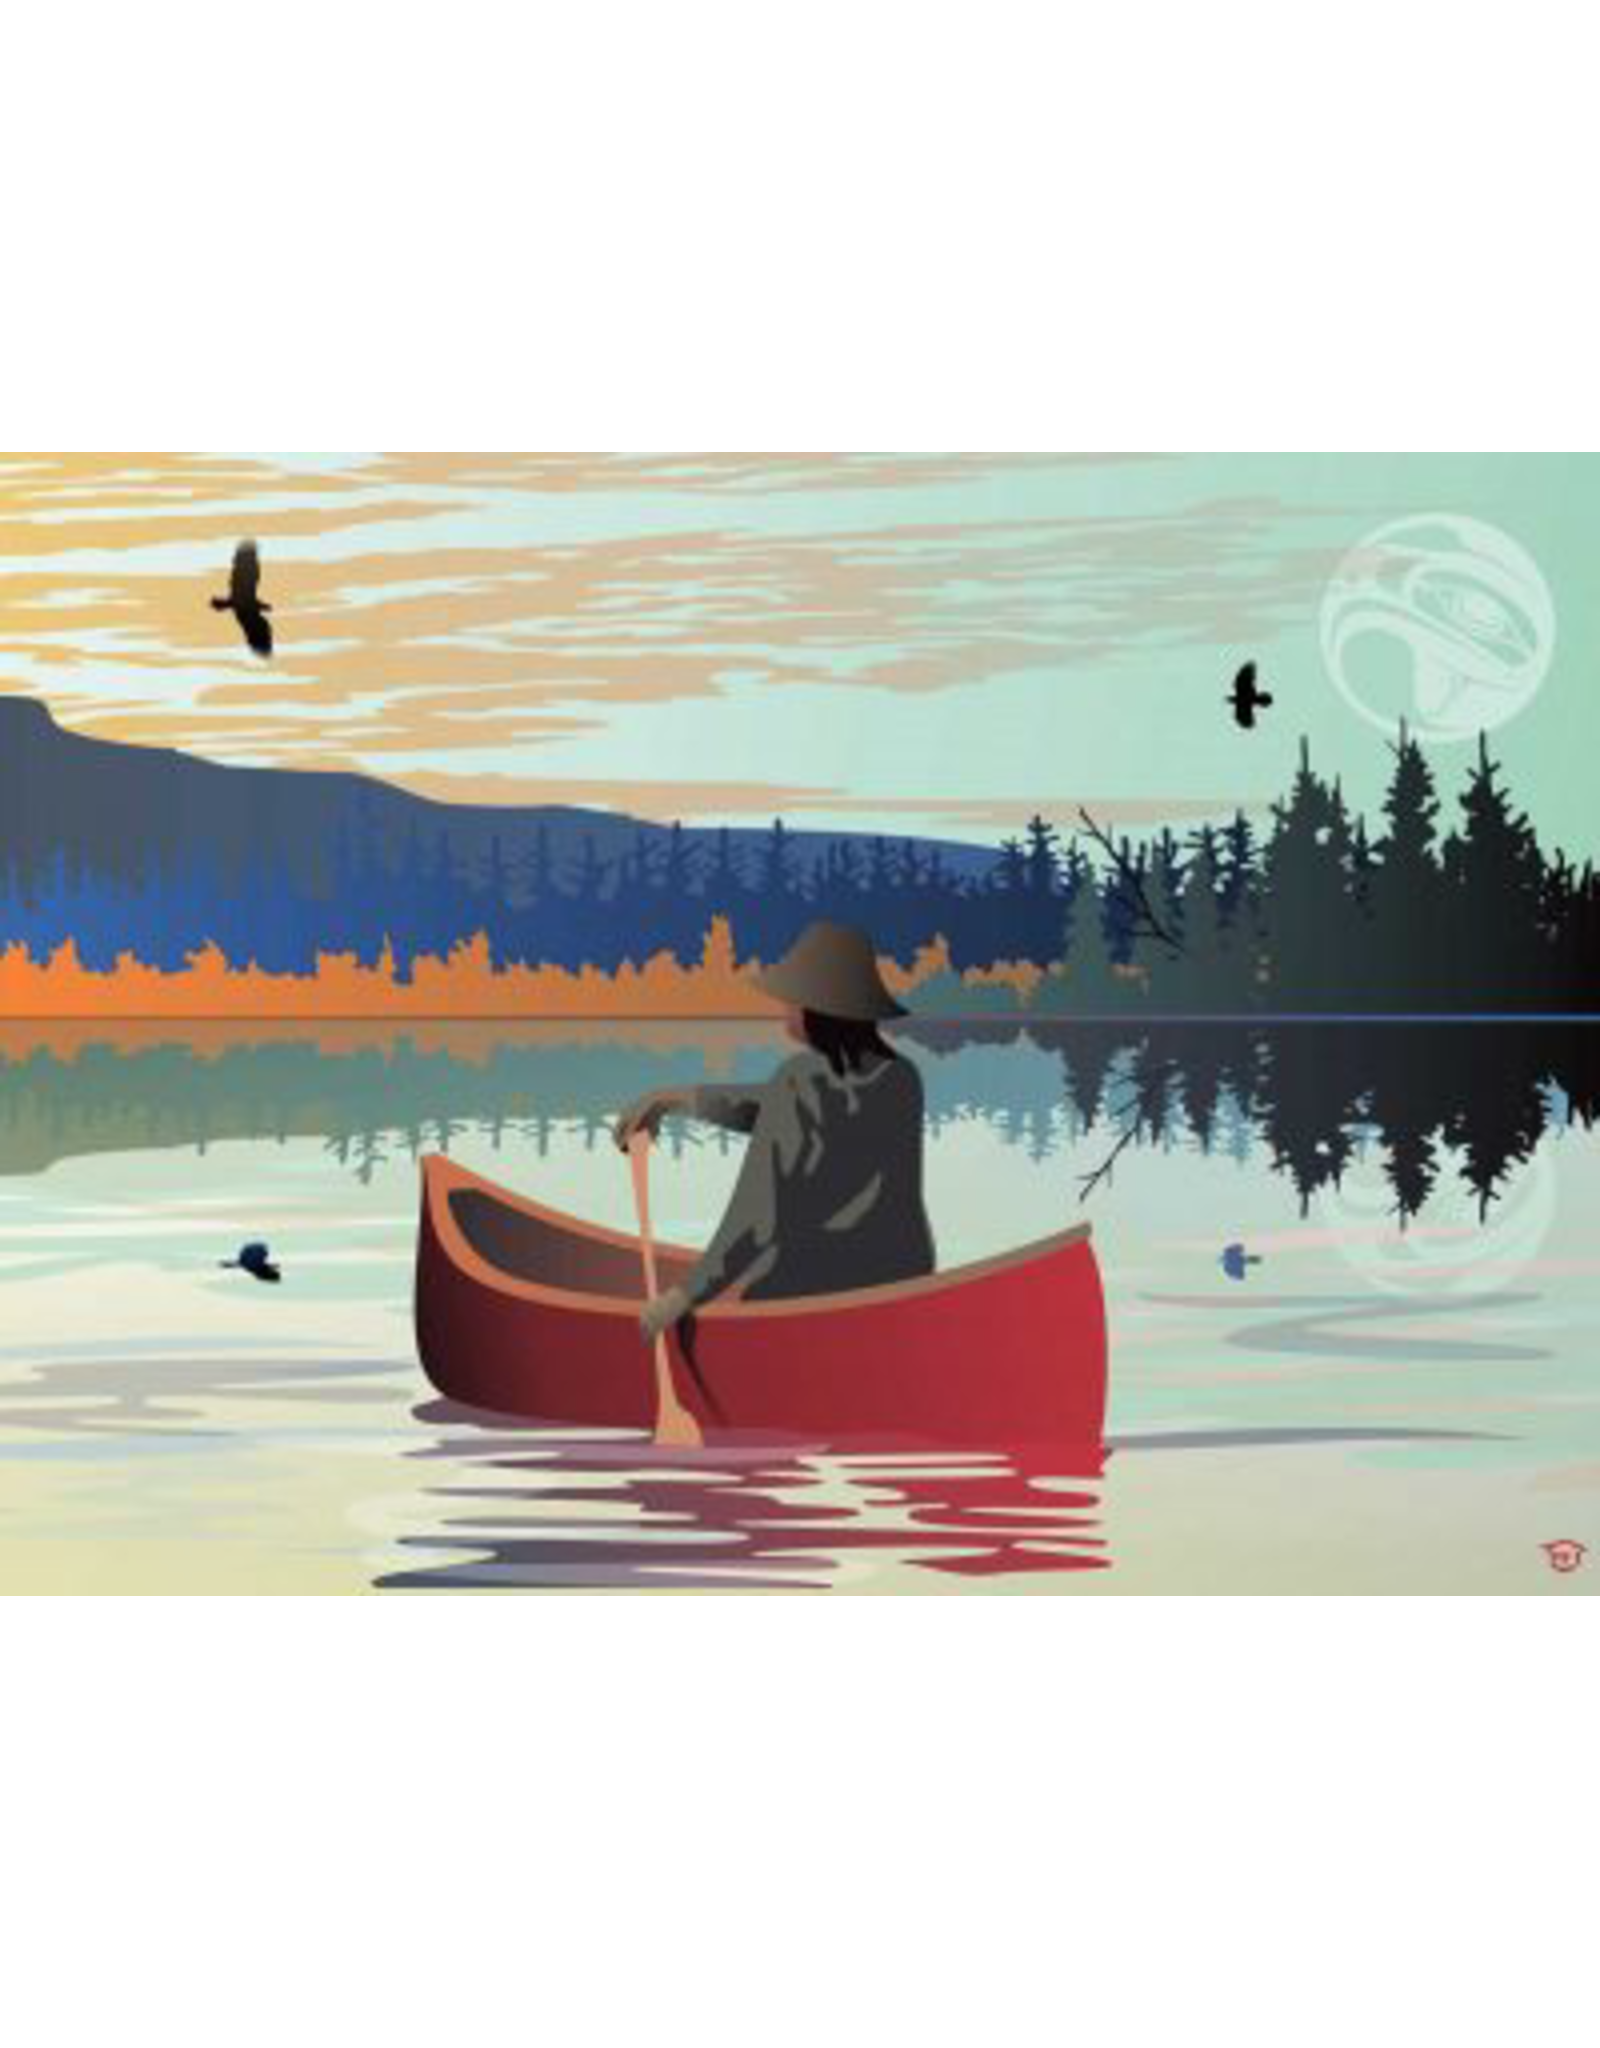 Lone Canoe par Mark Preston Édition Limitée